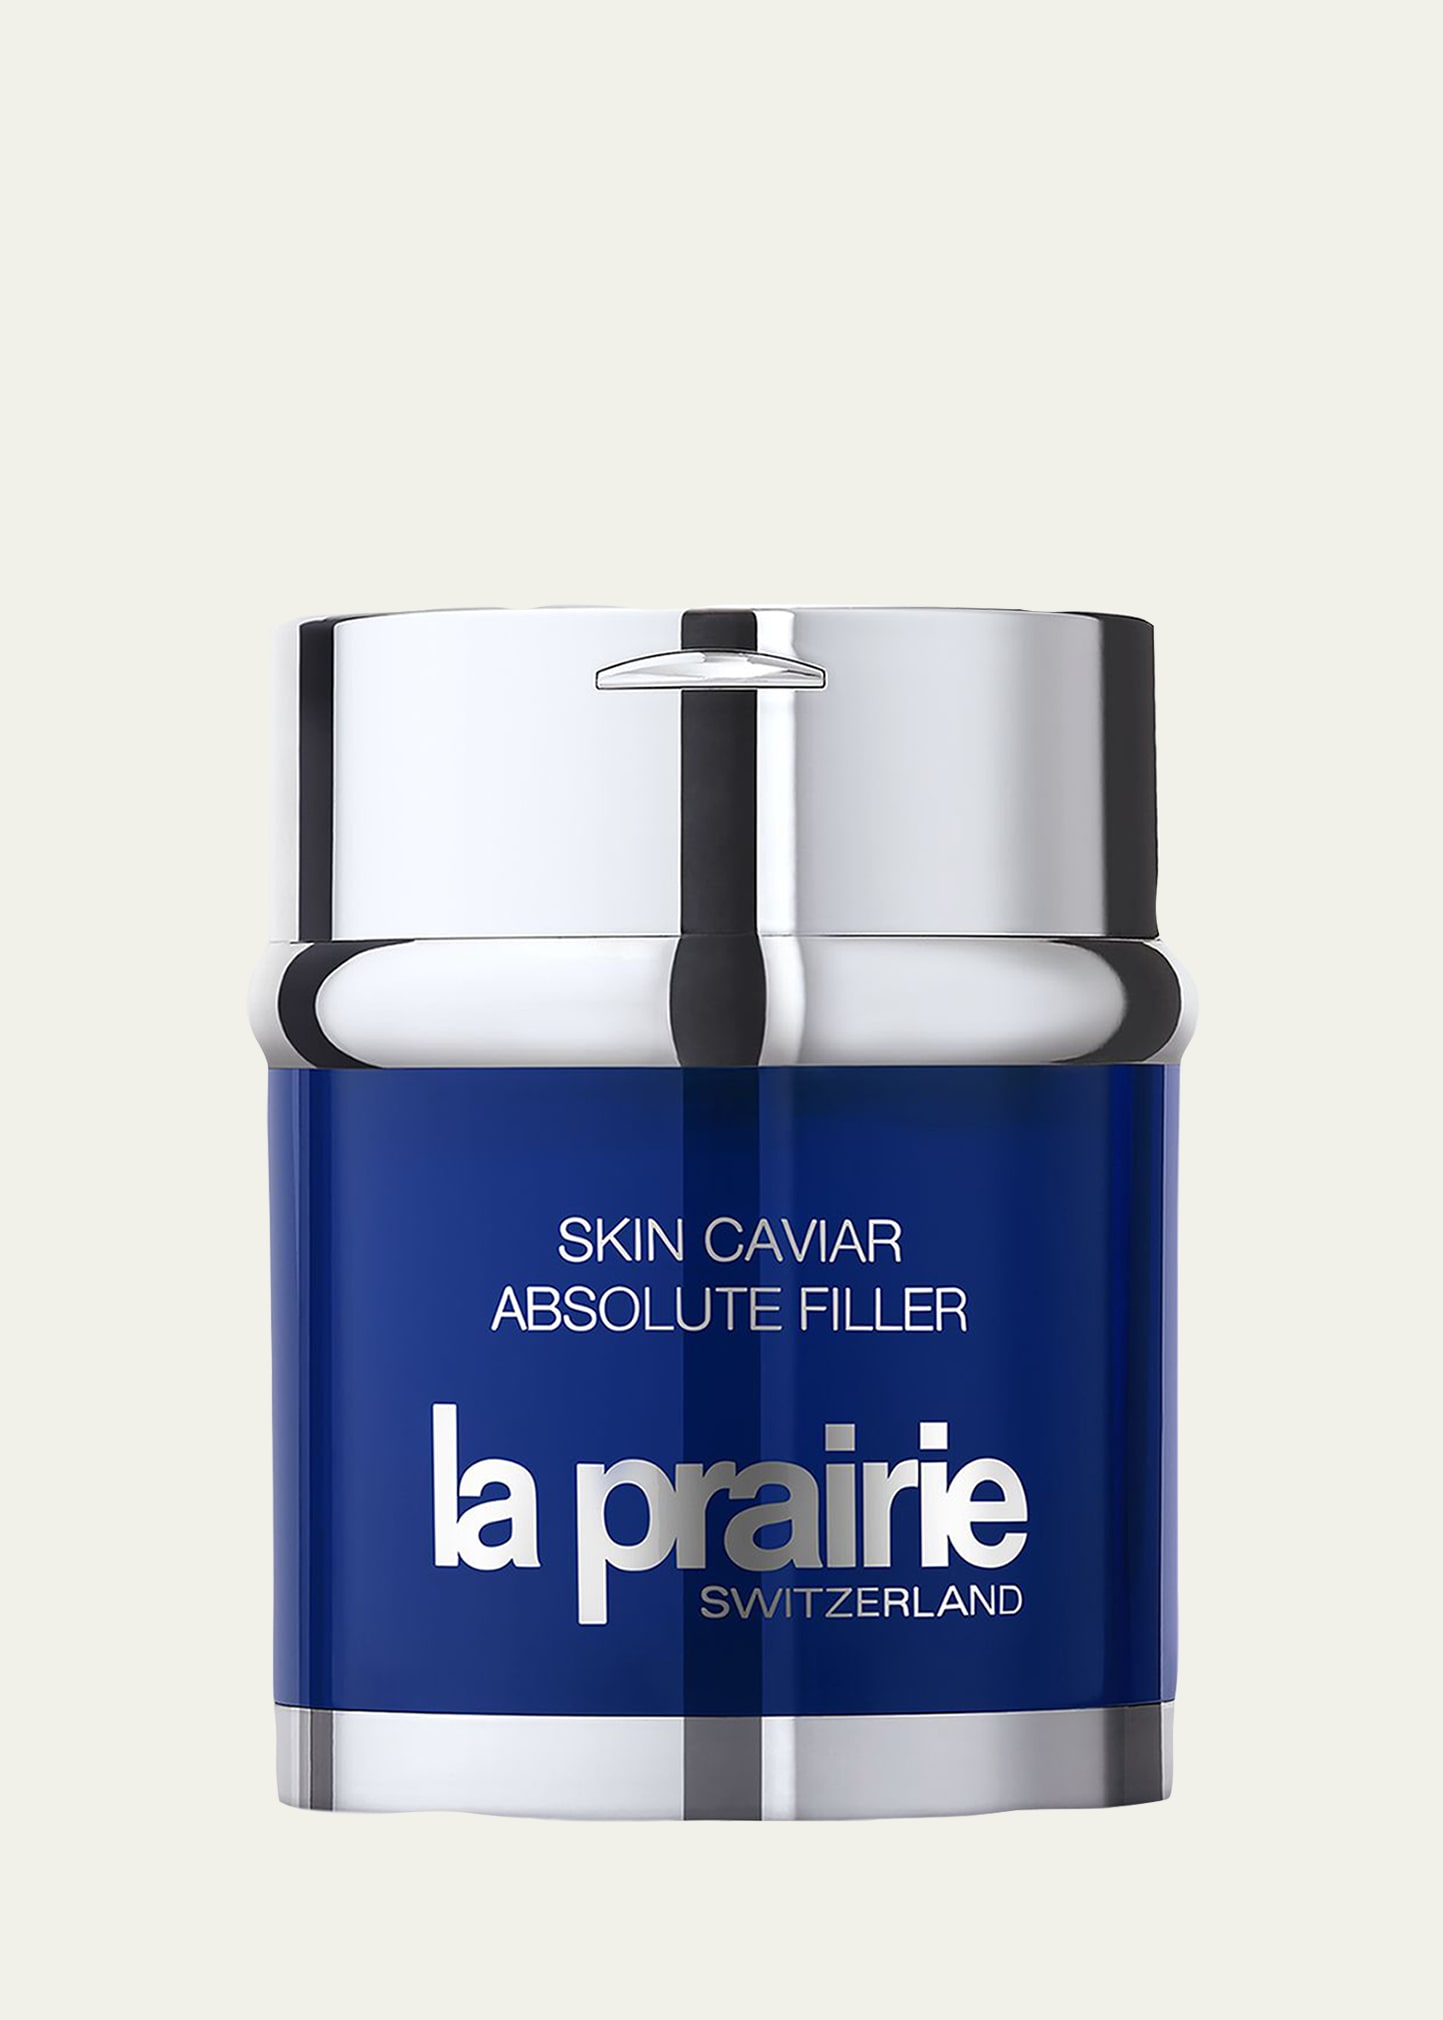 La Prairie Skin Caviar Absolute Filler, 2 oz.